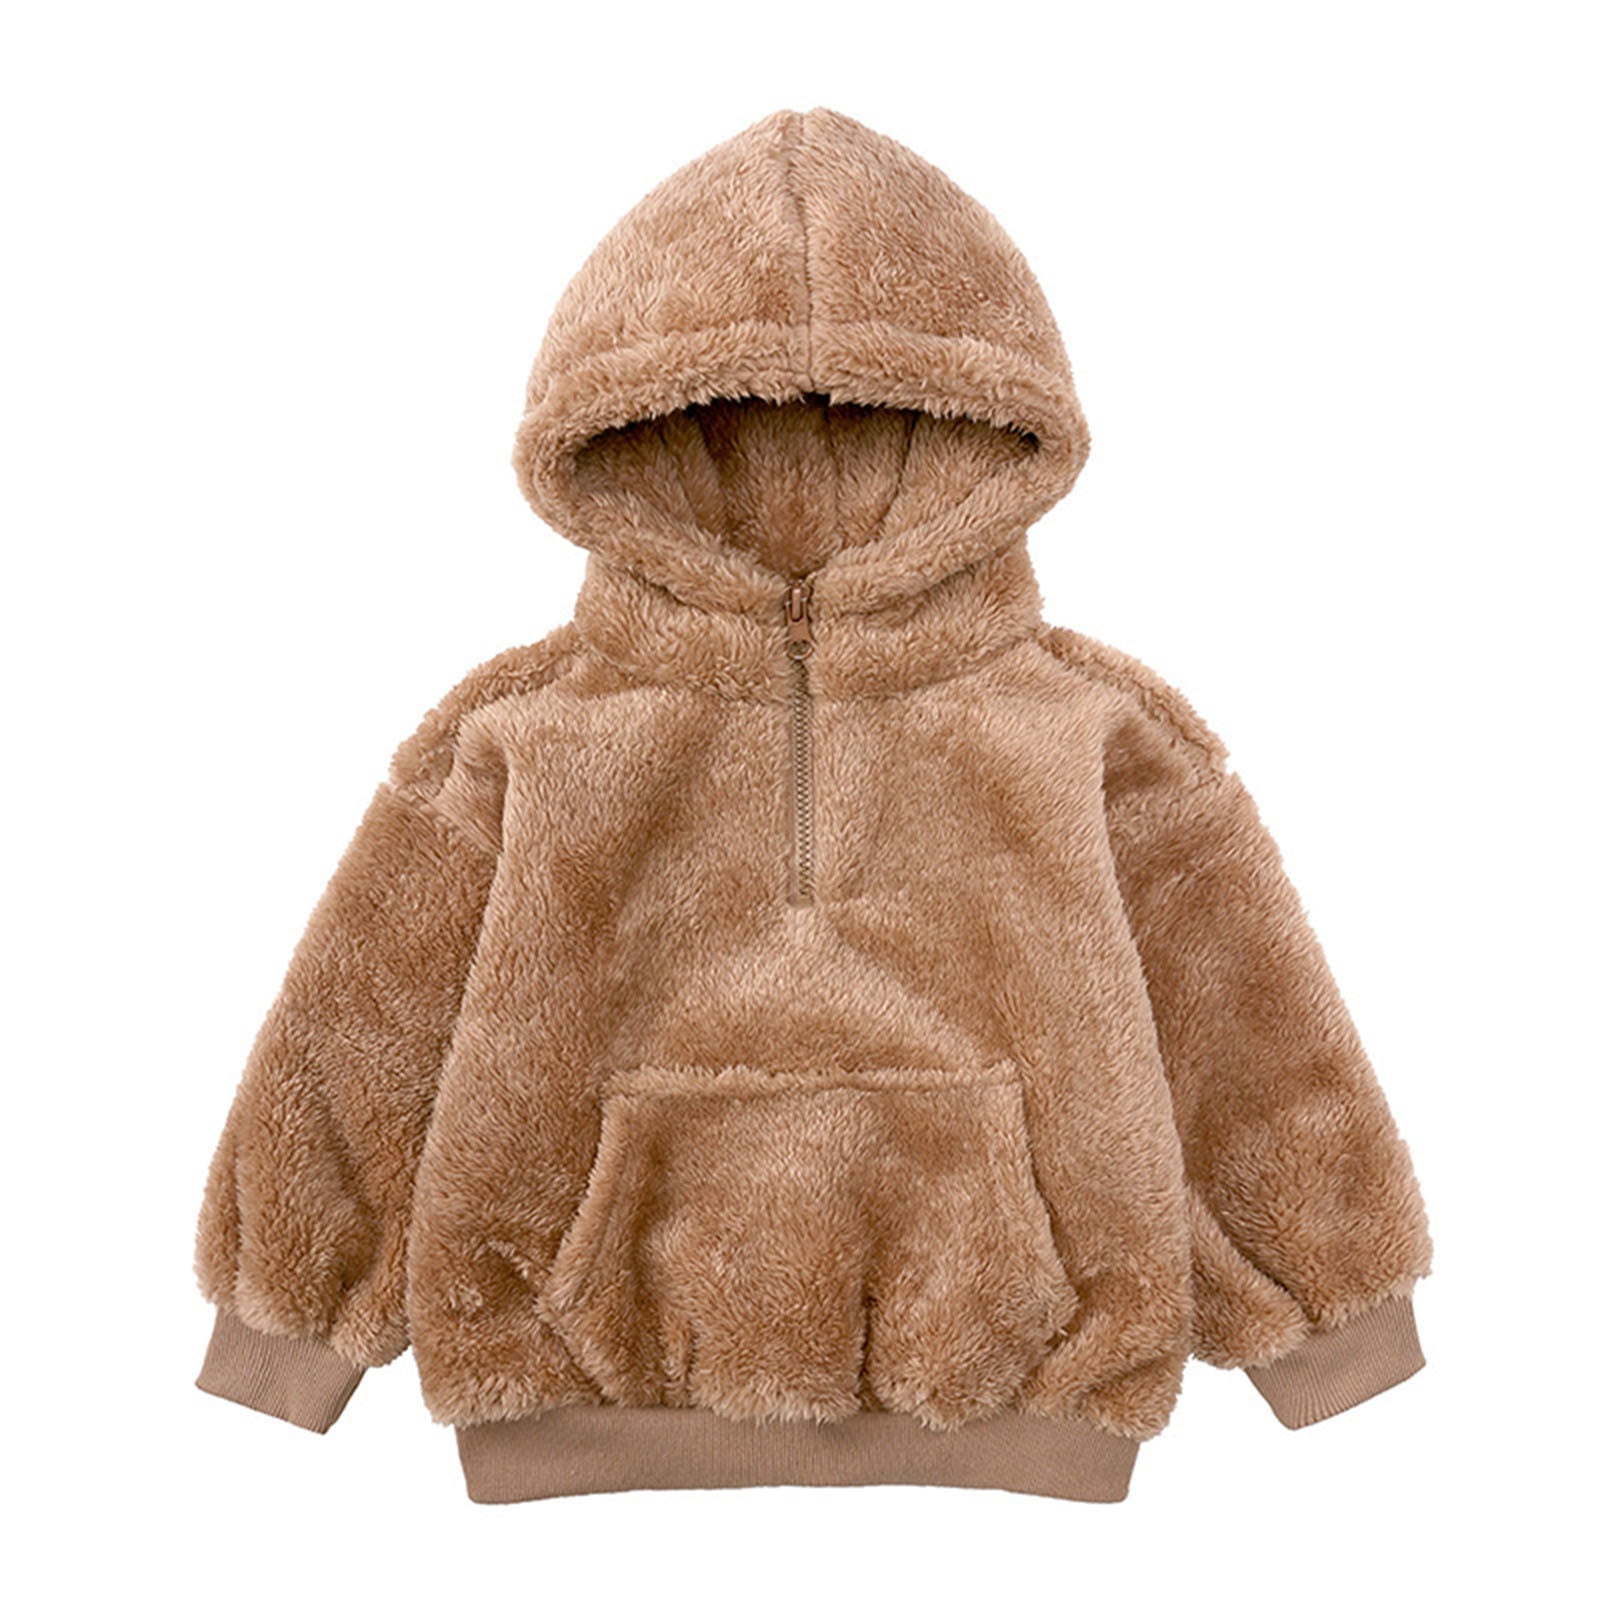 skpabo Toddler Boys Girls Hooded Fleece Jacket Half Zipper Coat